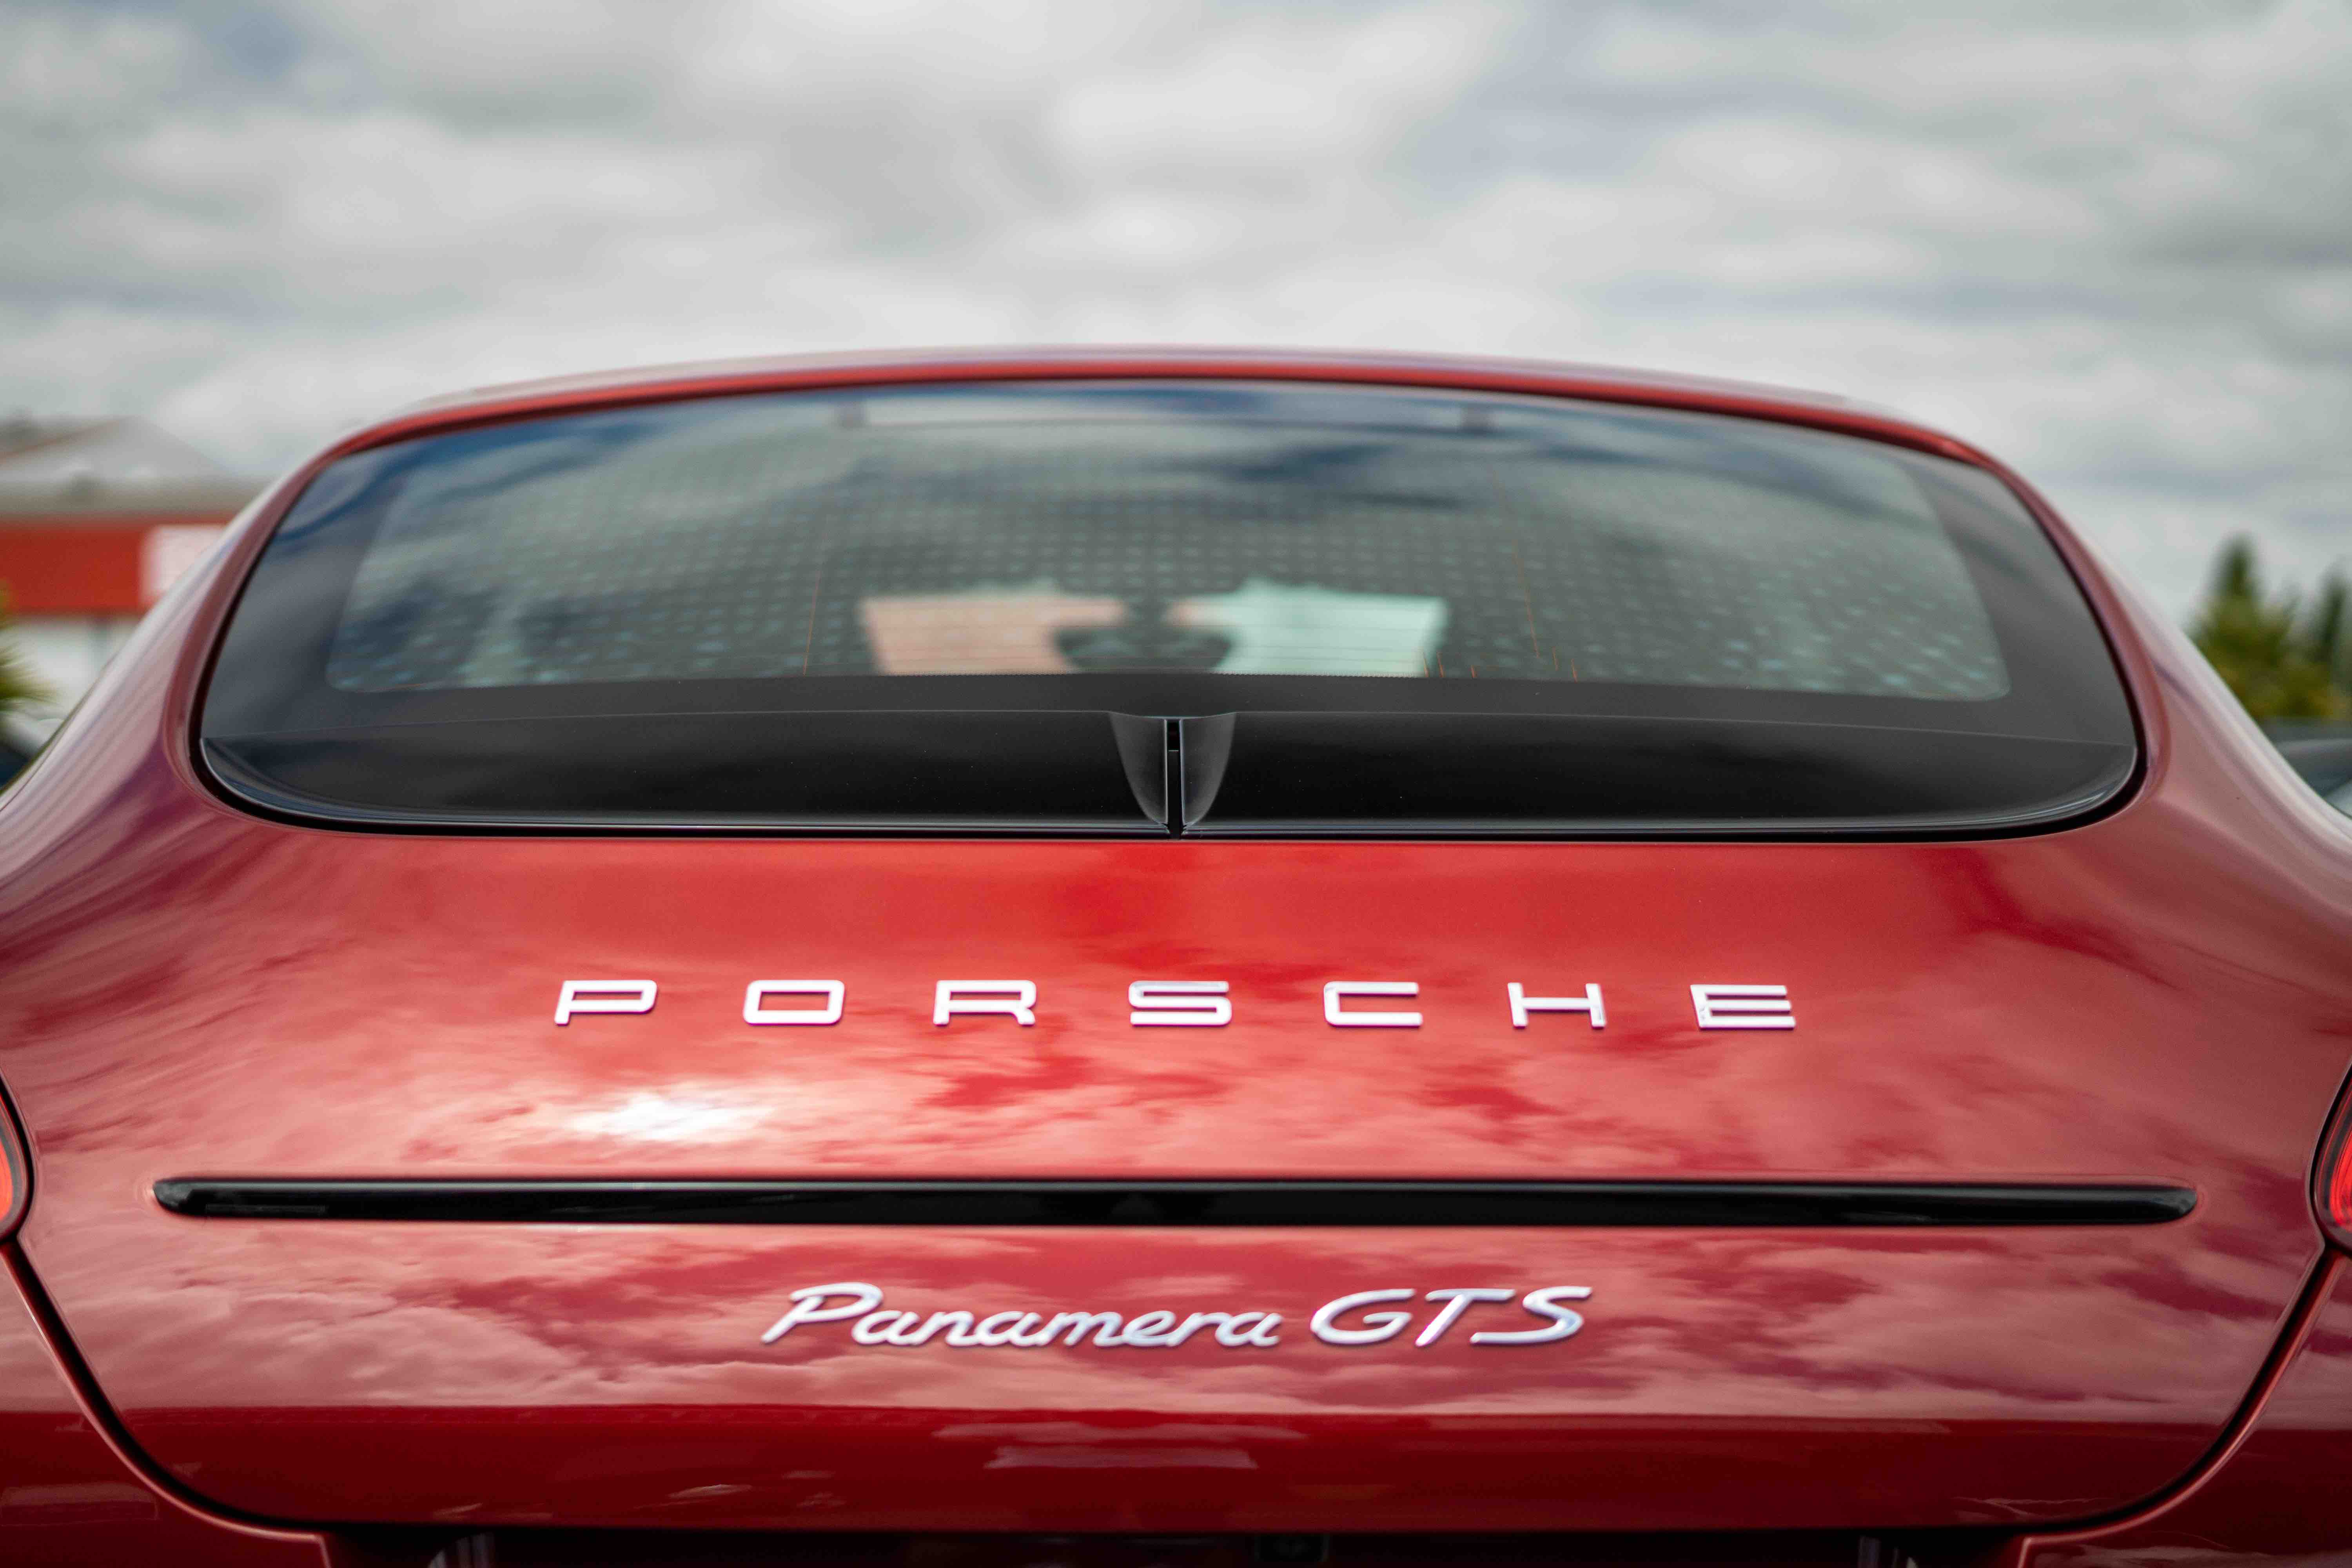 PORSCHE PANAMERA 4.8 V8 430 GTS